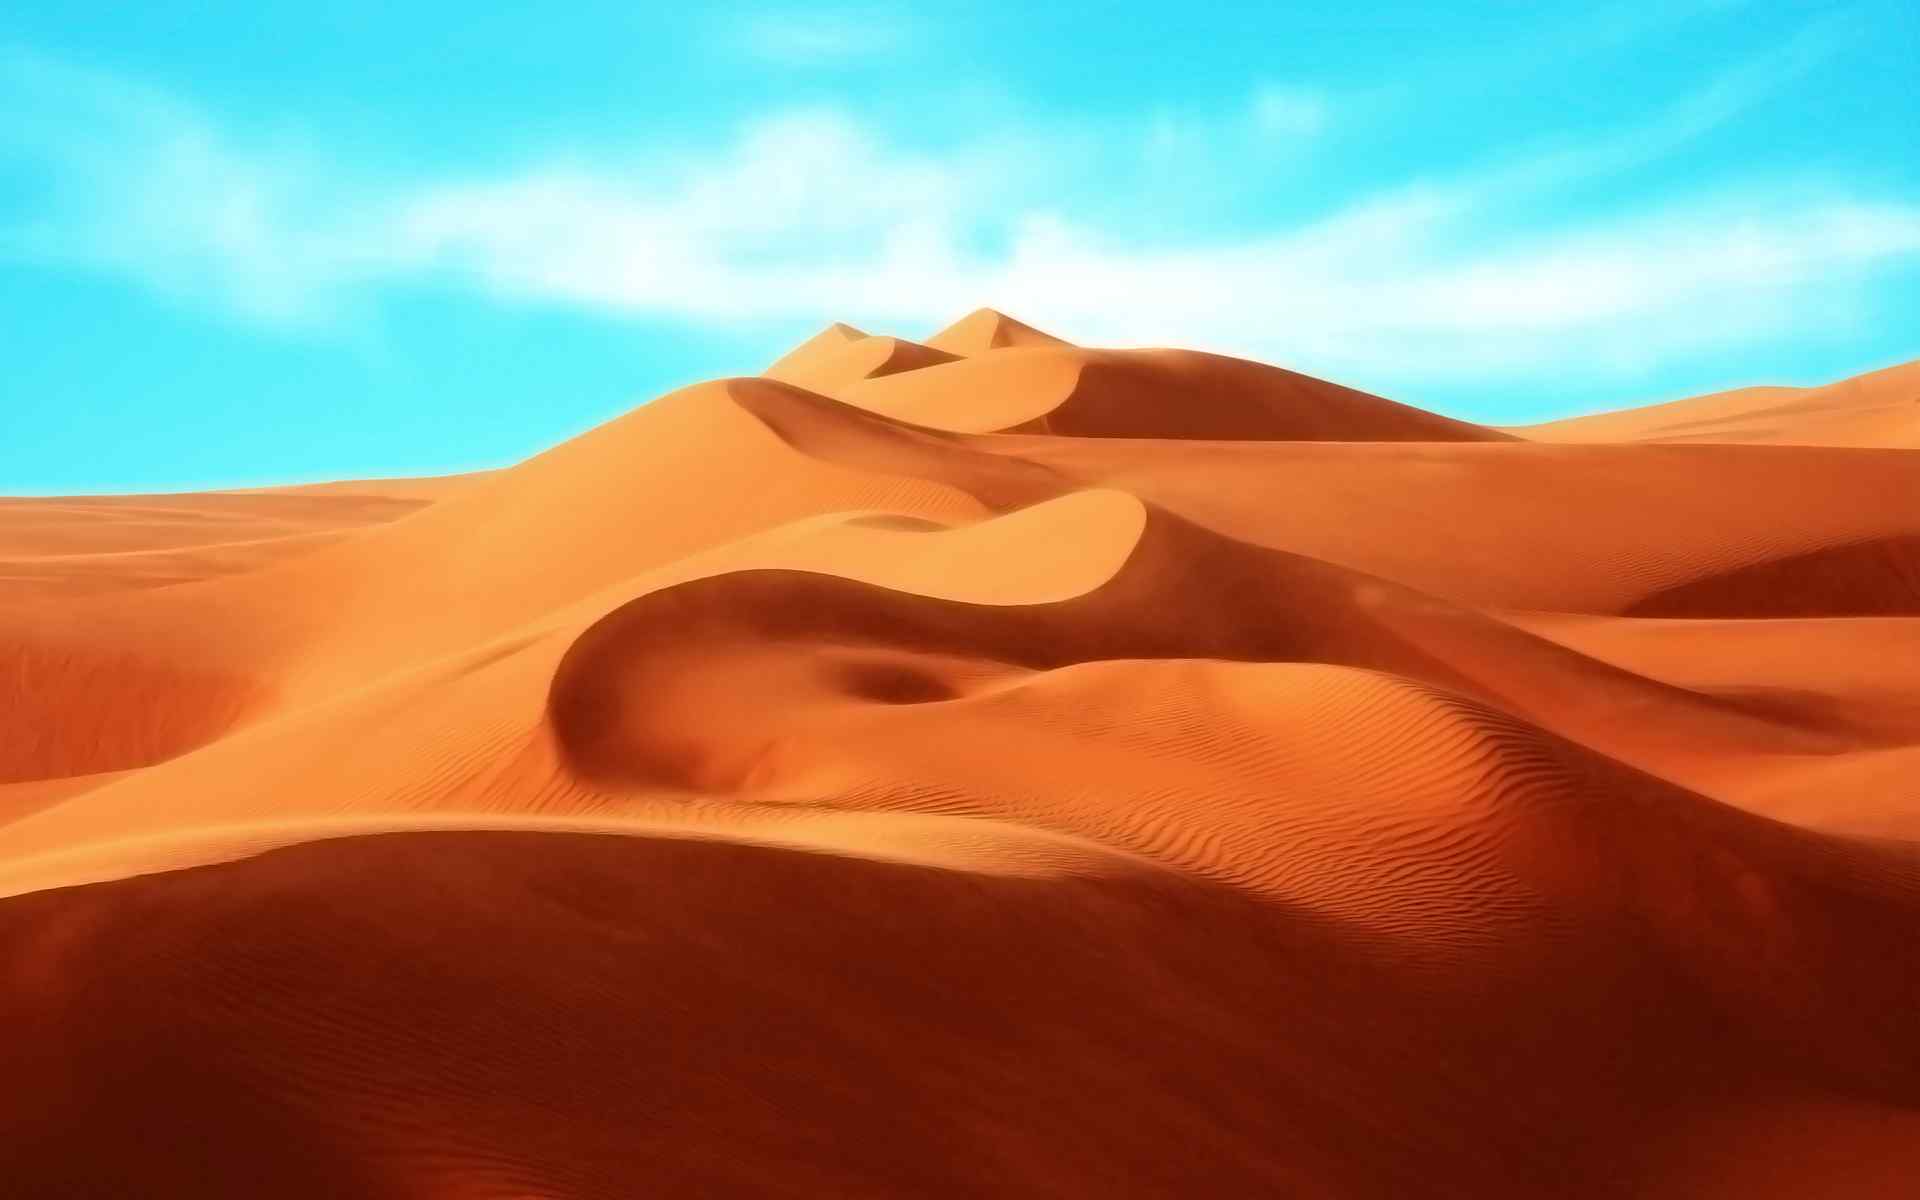 沙漠中黄沙小土坡曲线个性桌面壁纸